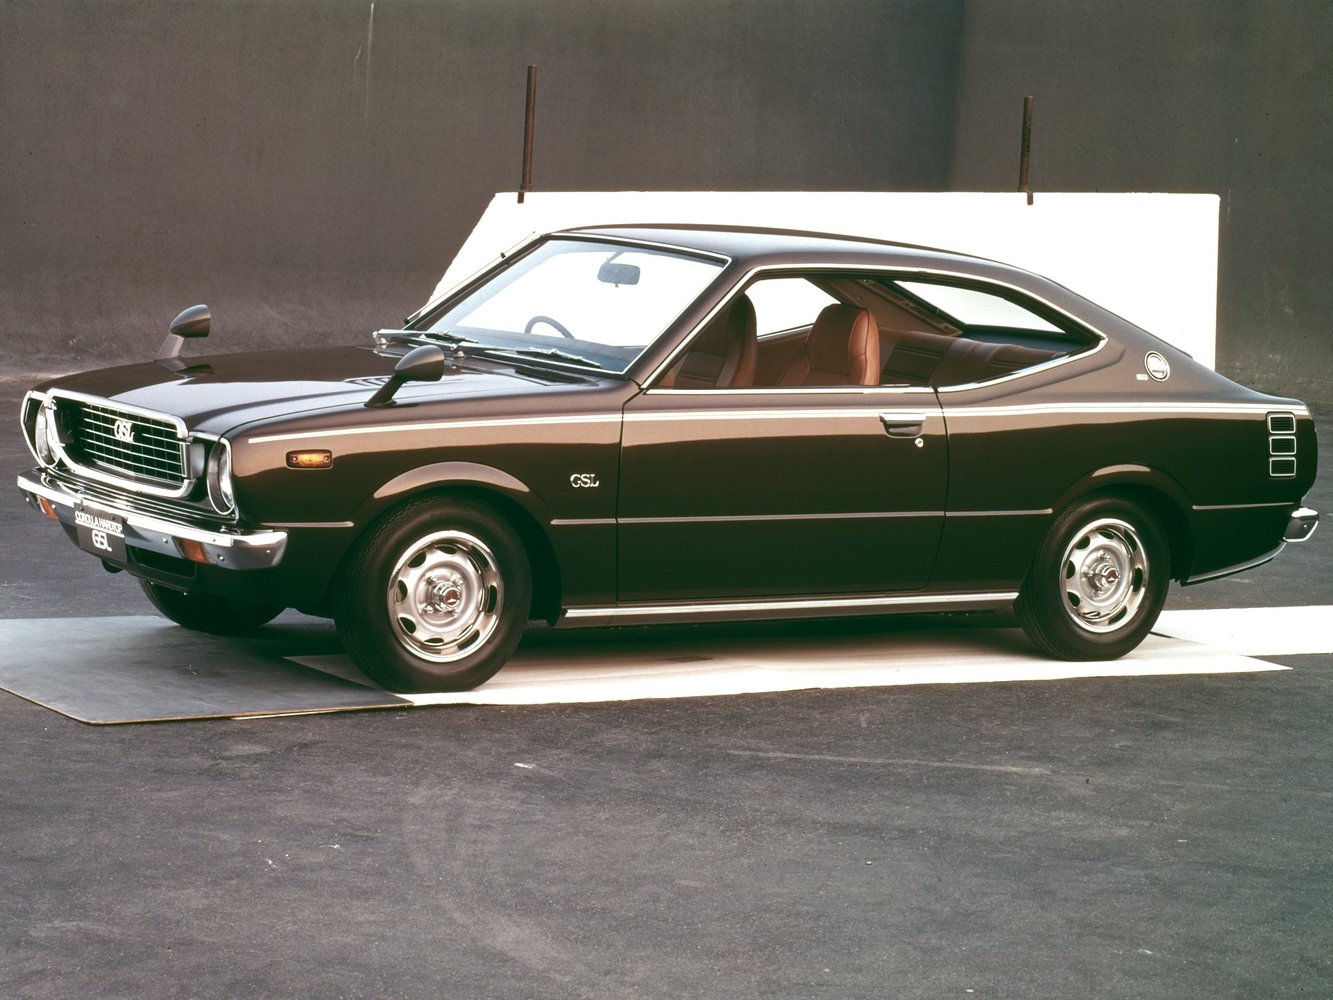 хэтчбек 3 дв. Toyota Corolla 1974 - 1979г выпуска модификация 1.2 MT (54 л.с.)